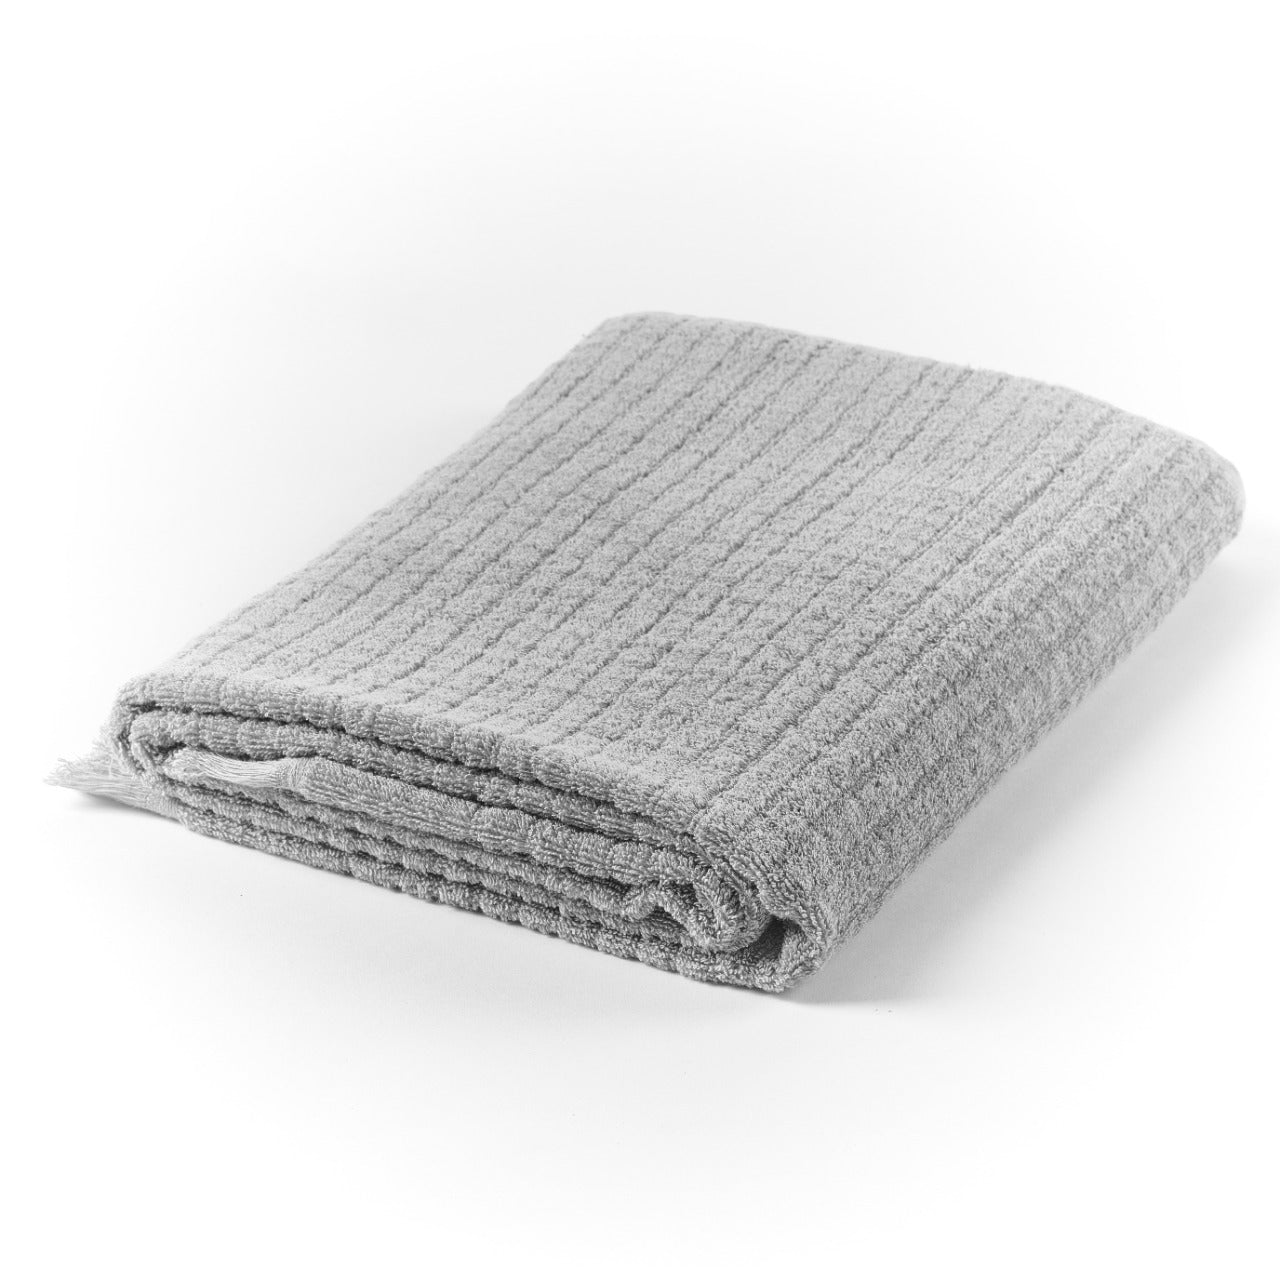 Rolette- Square Patterns Towel